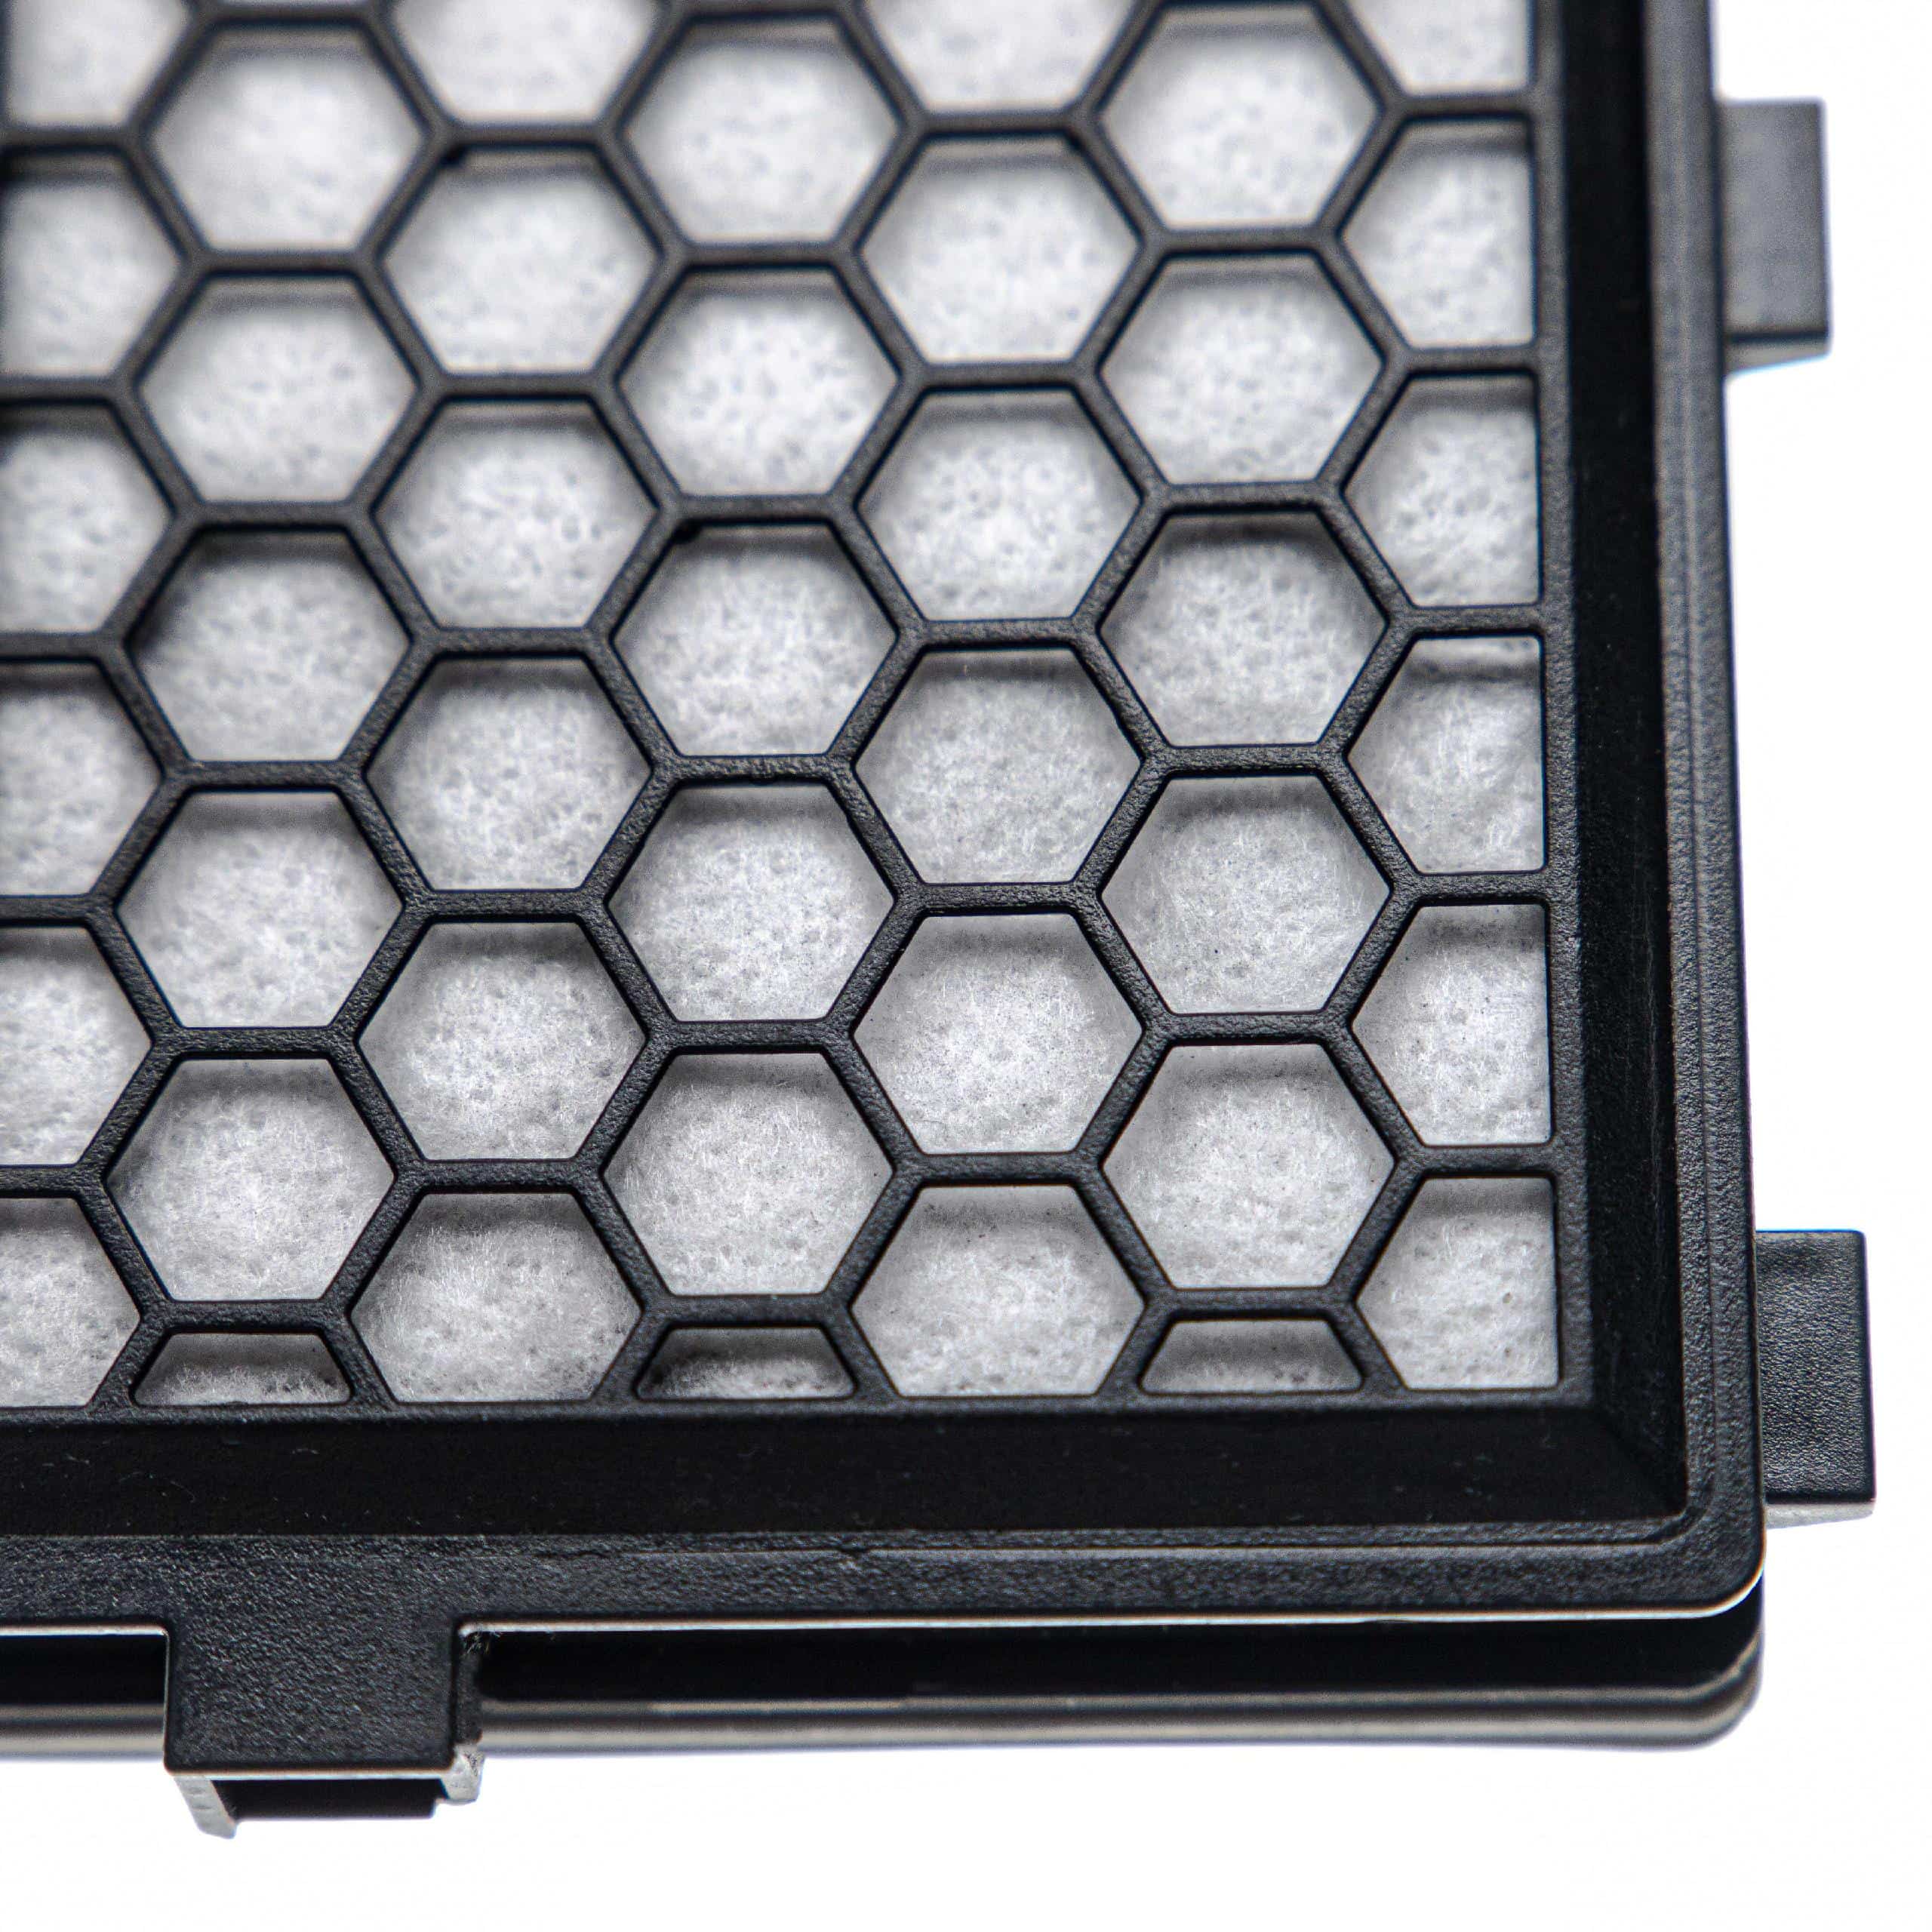 2x Filtro reemplaza Miele 5996880, 5996881 para aspiradora - filtro HEPA de carbón activo negro / blanco